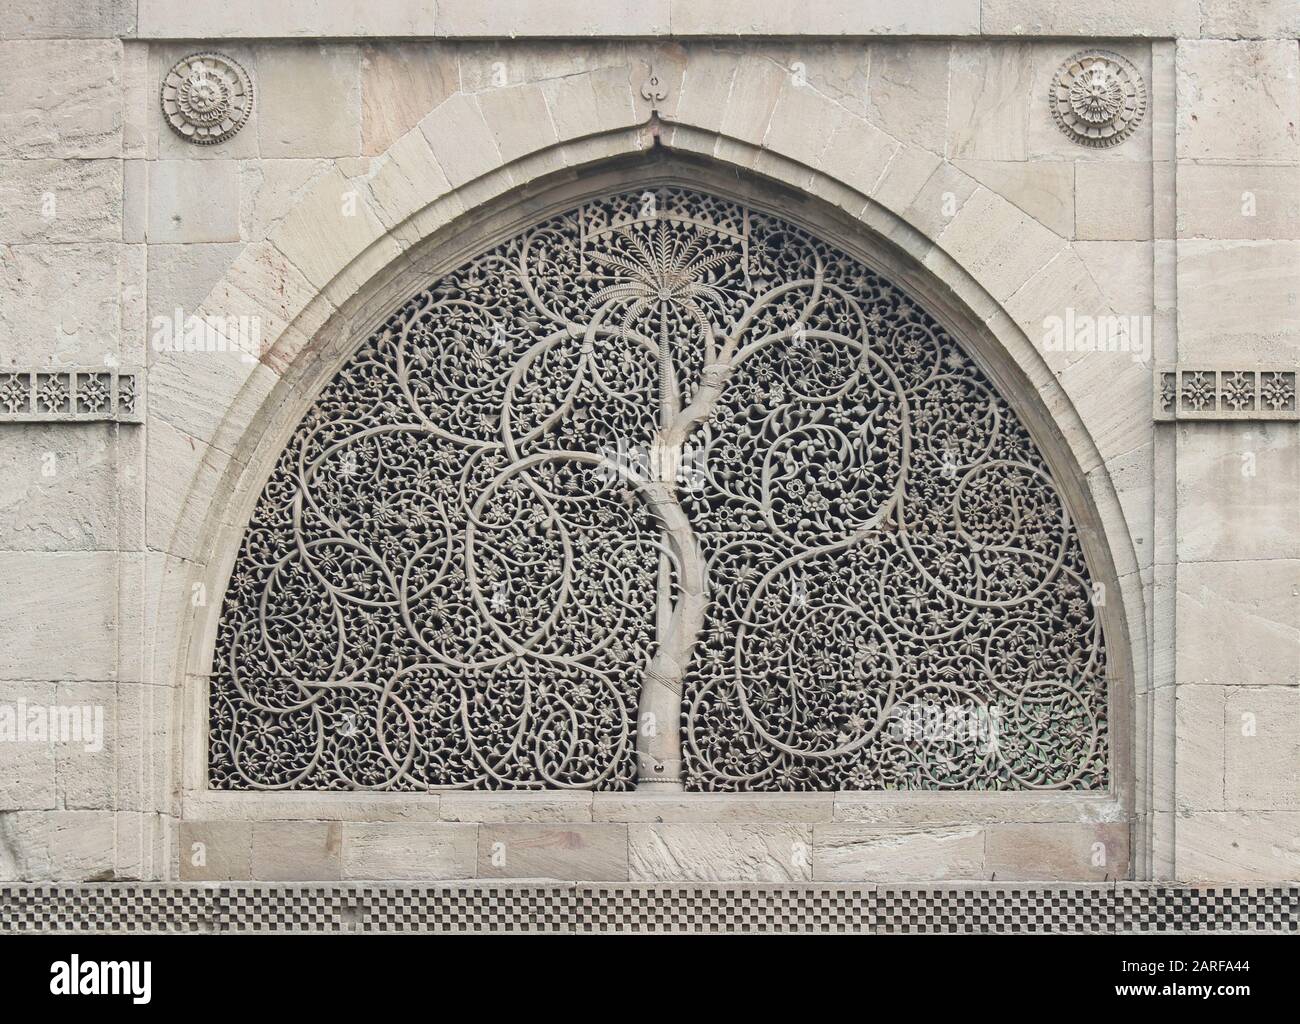 Ventanas de enrejado de piedra tallada (jali) con motivo de palma y espuma entrelazada - Mezquita Sidi Saiyed, Ahmedabad, Gujarat, India Foto de stock